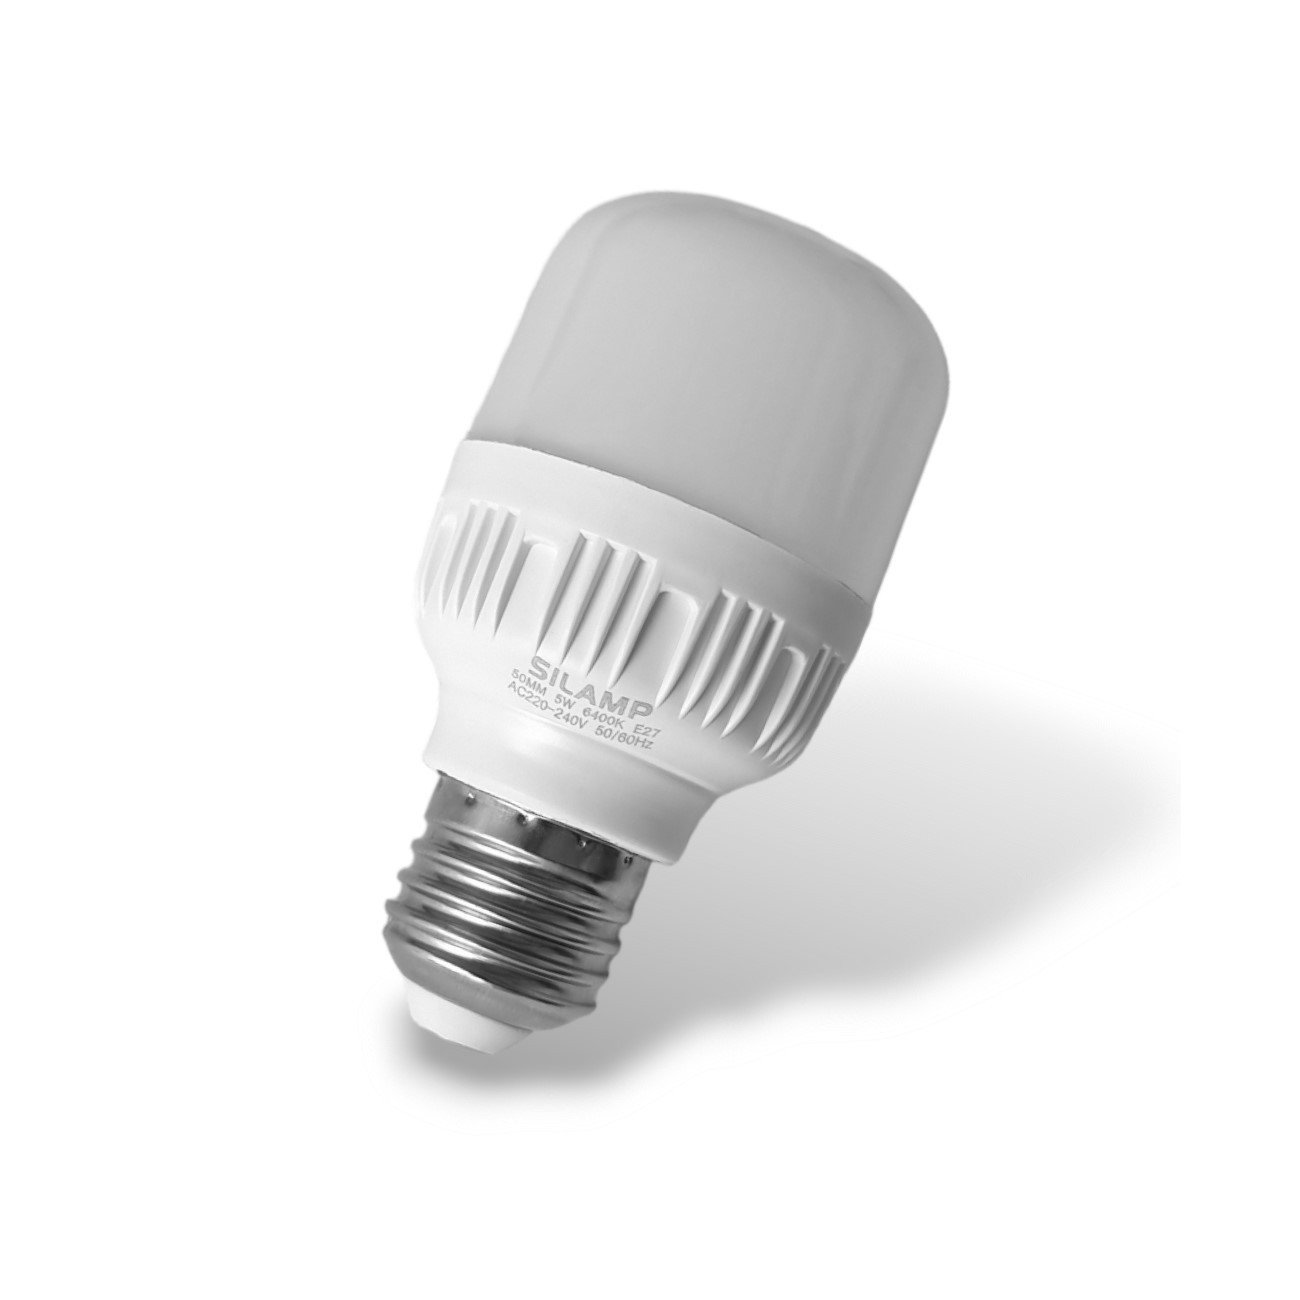 BÓNG ĐÈN LED TRỤ 5W ánh sáng trắng, công suất đủ